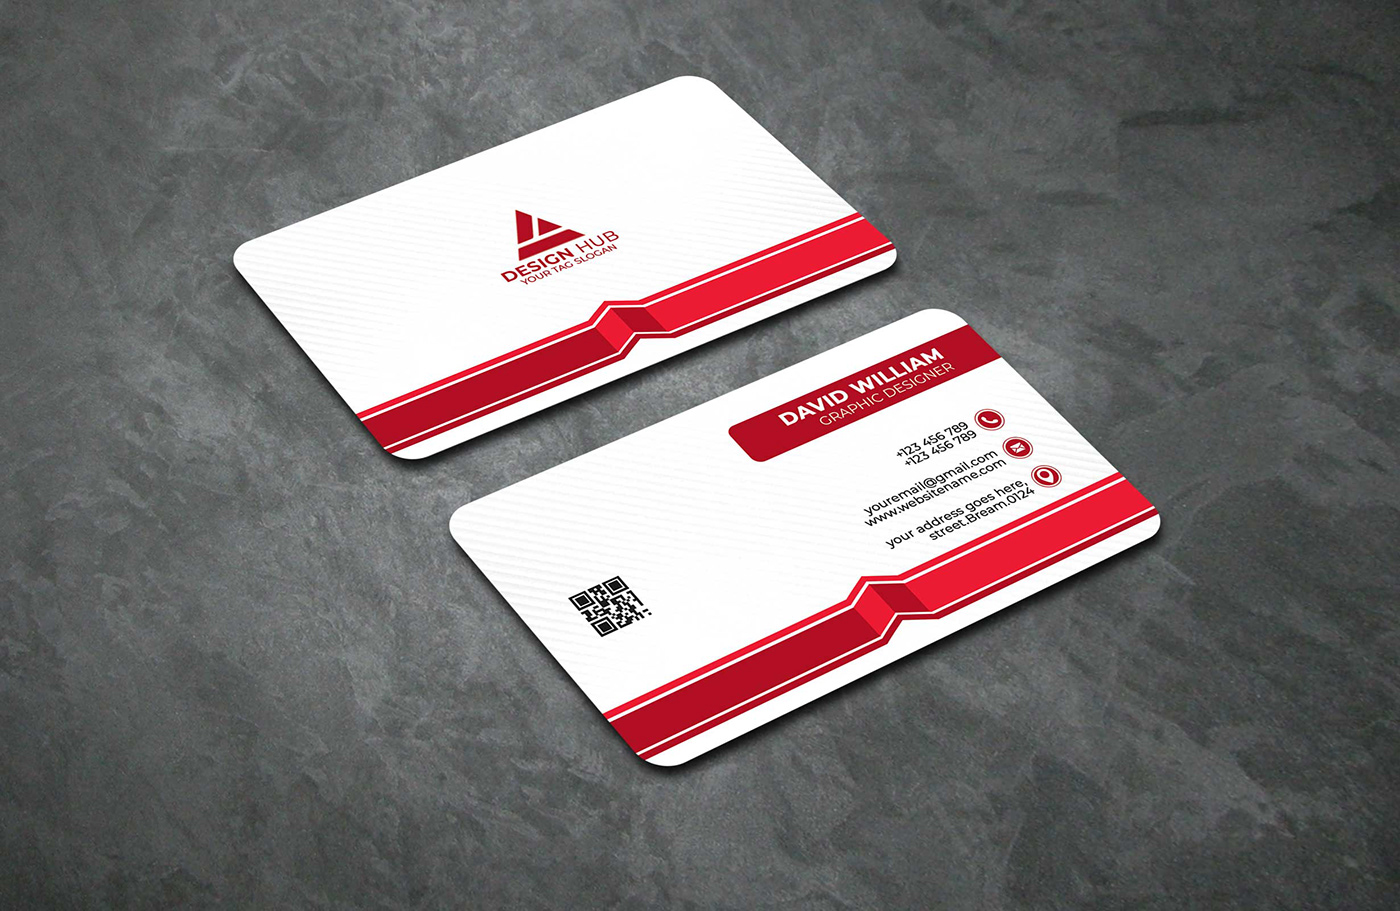 Business card design modern Business Card Designs Mockup Graphic Designer business card designer graphic designer Socialmedia business card design idea